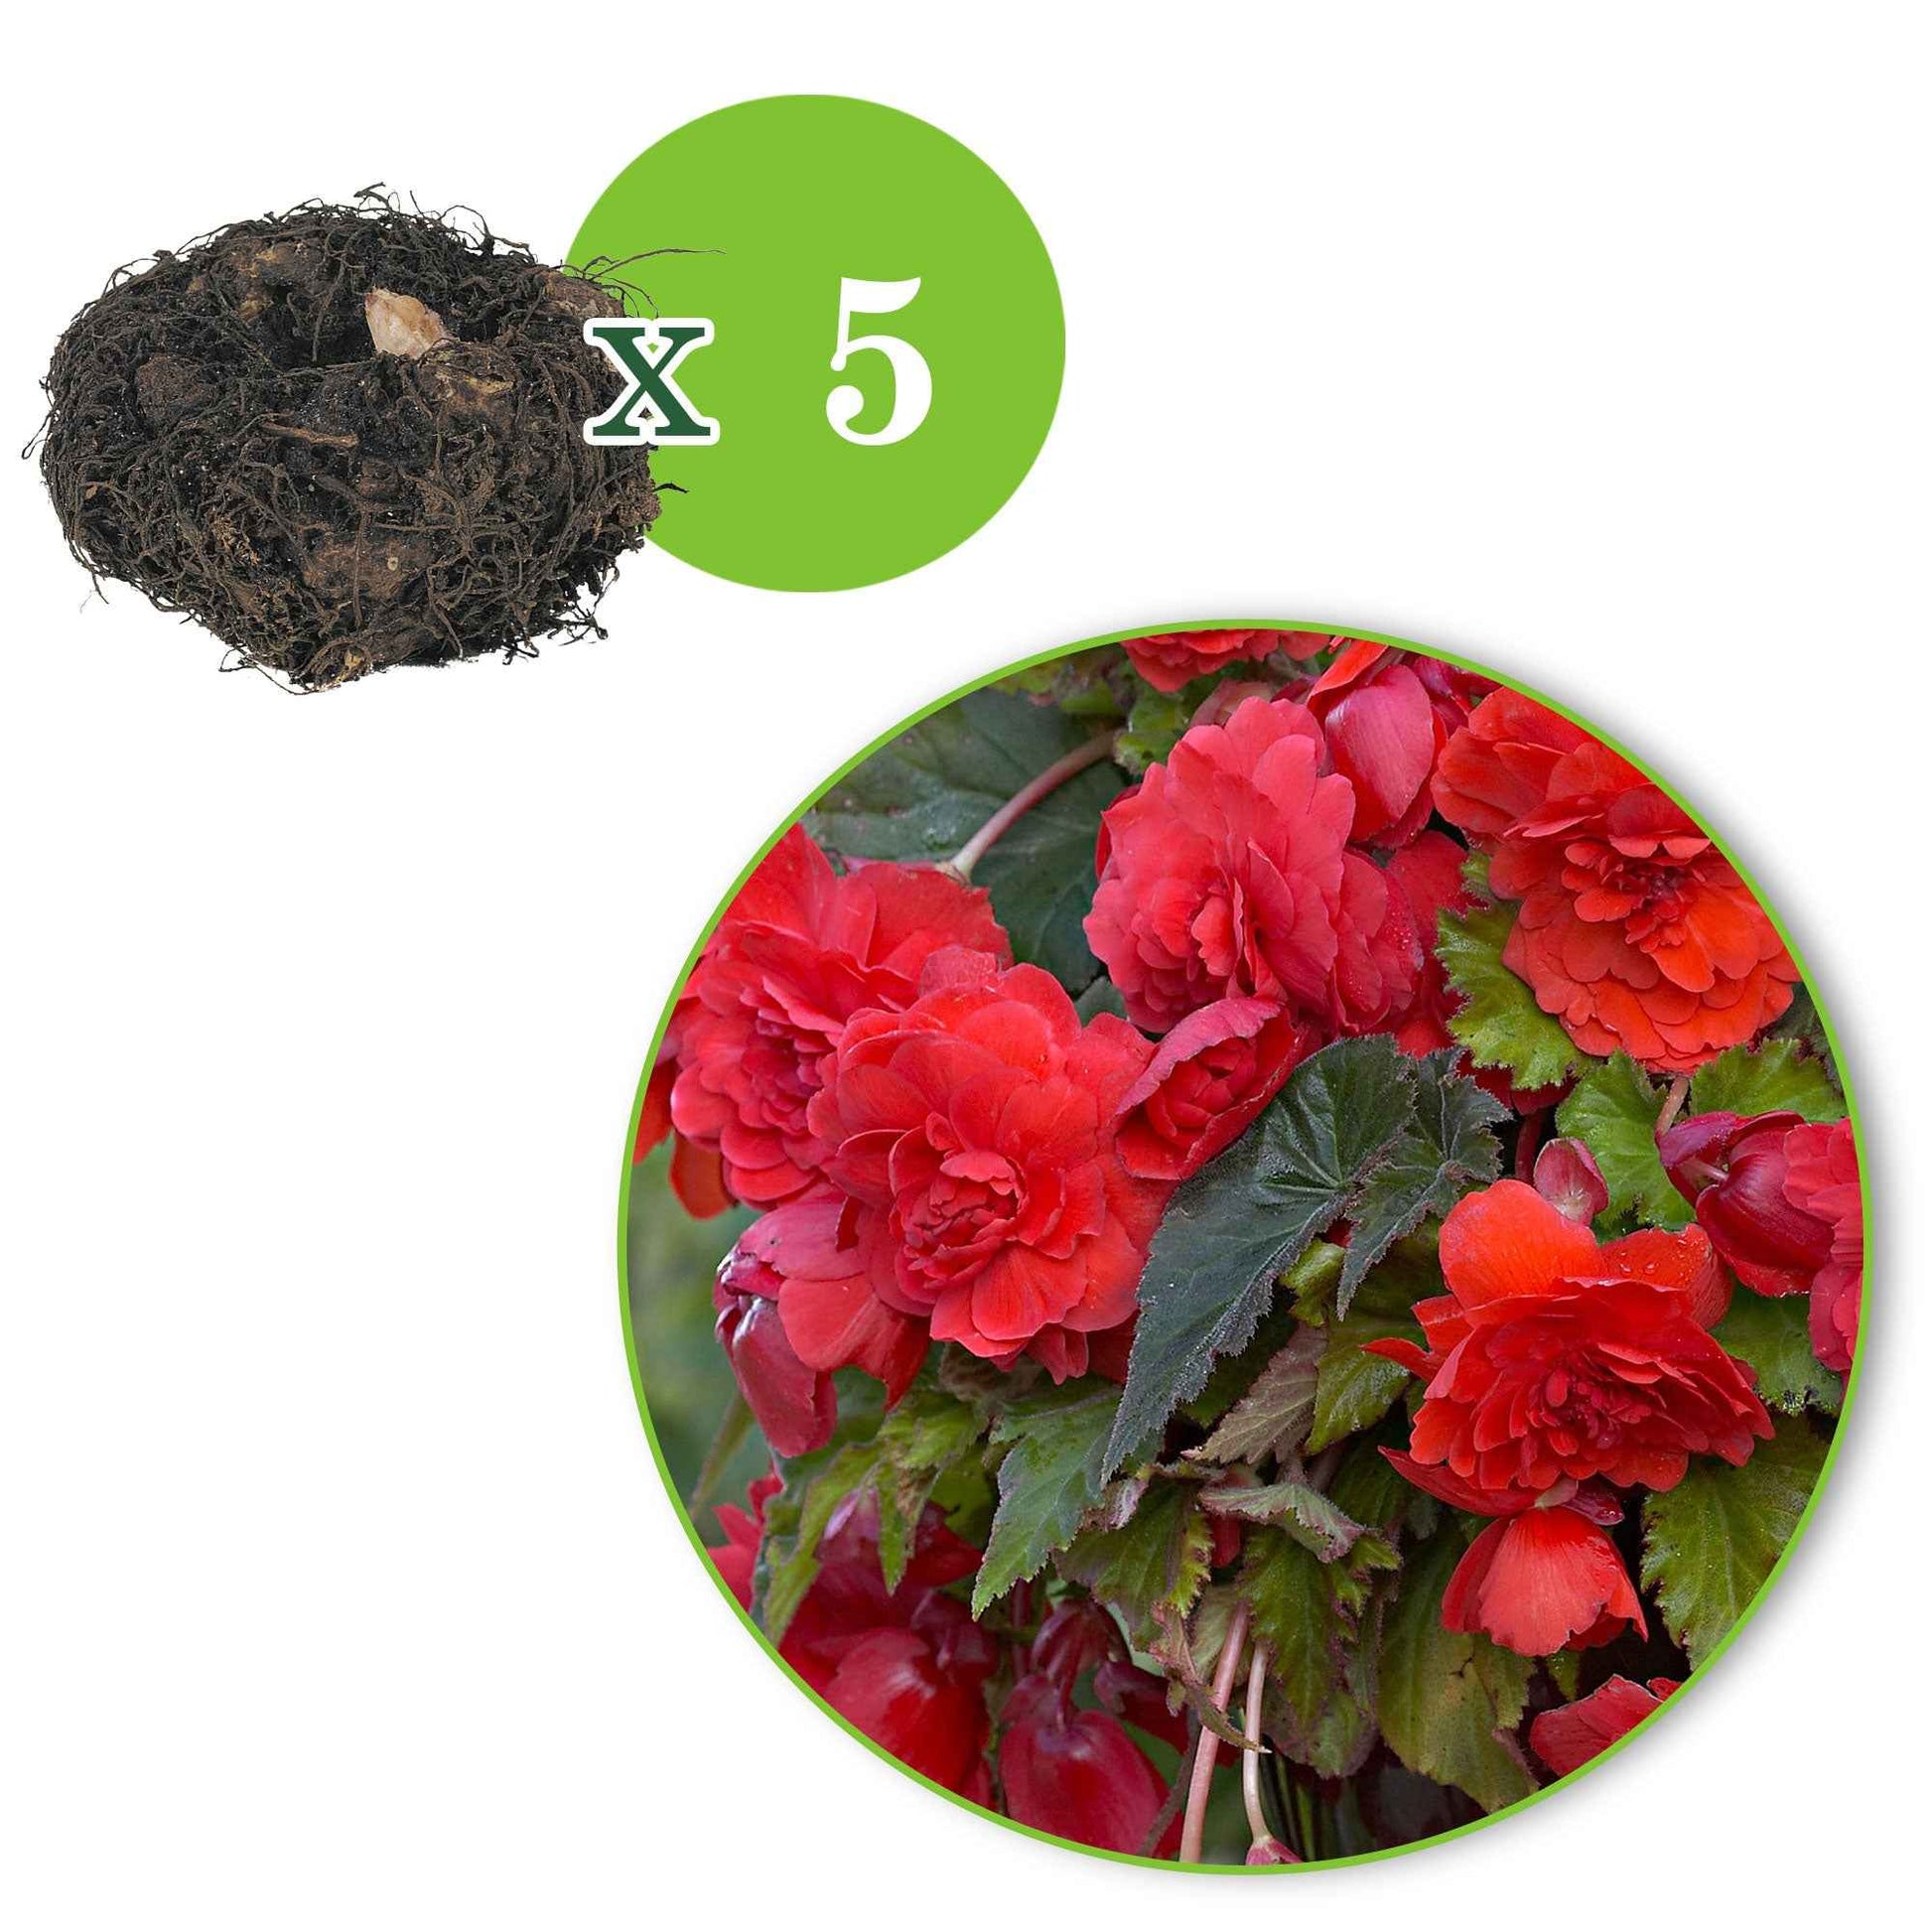 Duft-Begonie 'Red Glory' (x5) - Begonia odorata red glory - Blumenzwiebeln Sommerblüher